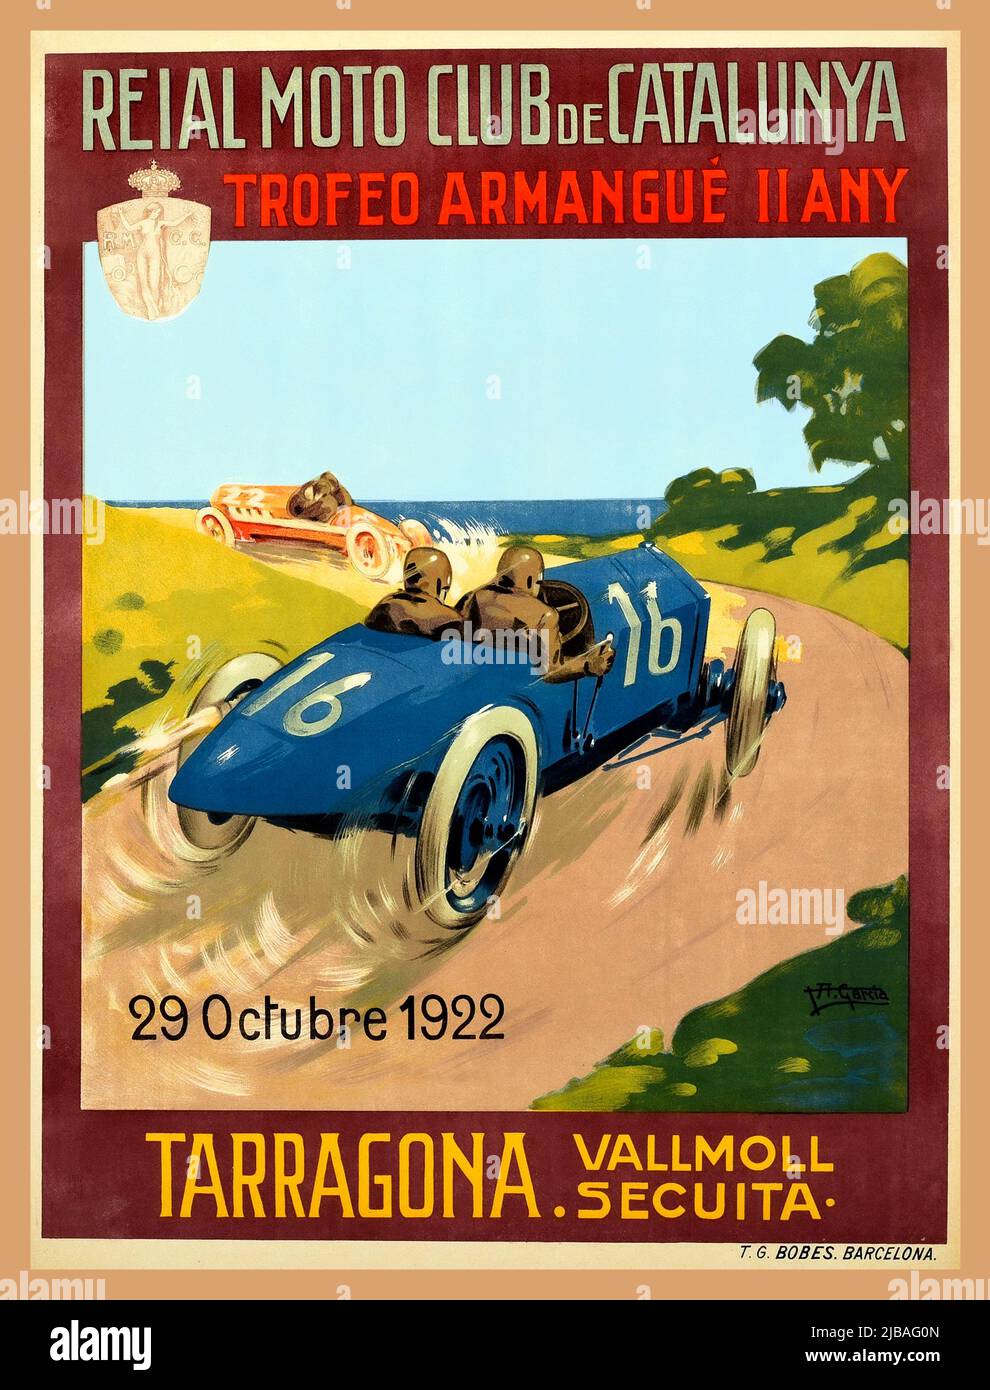 Spanisches Autorennen-Plakat des Jahrgangs 1920s, das die Armangué Trophy in Tarragona am 29. Oktober 1922 anwirbt, organisiert vom Reial Moto Club de Catalunya / Royal Moto Club of Catalonia. Illustration Poster Lithographie von zwei Männern in einem klassischen blauen Rennwagen mit der Nummer 16, die mit Geschwindigkeit in der spanischen Landschaft hinter einem orangefarbenen Auto mit der Markierung 22 mit dem Meer im Hintergrund sichtbar fahren.Tarragona Vallmoll Secuita. Der Royal Moto Club von Katalonien wurde 1916 gegründet und organisierte von 1921 bis 1923 die Armangué Trophy. Gedruckt von T.G Bobes. Barcelona Spanien Stockfoto